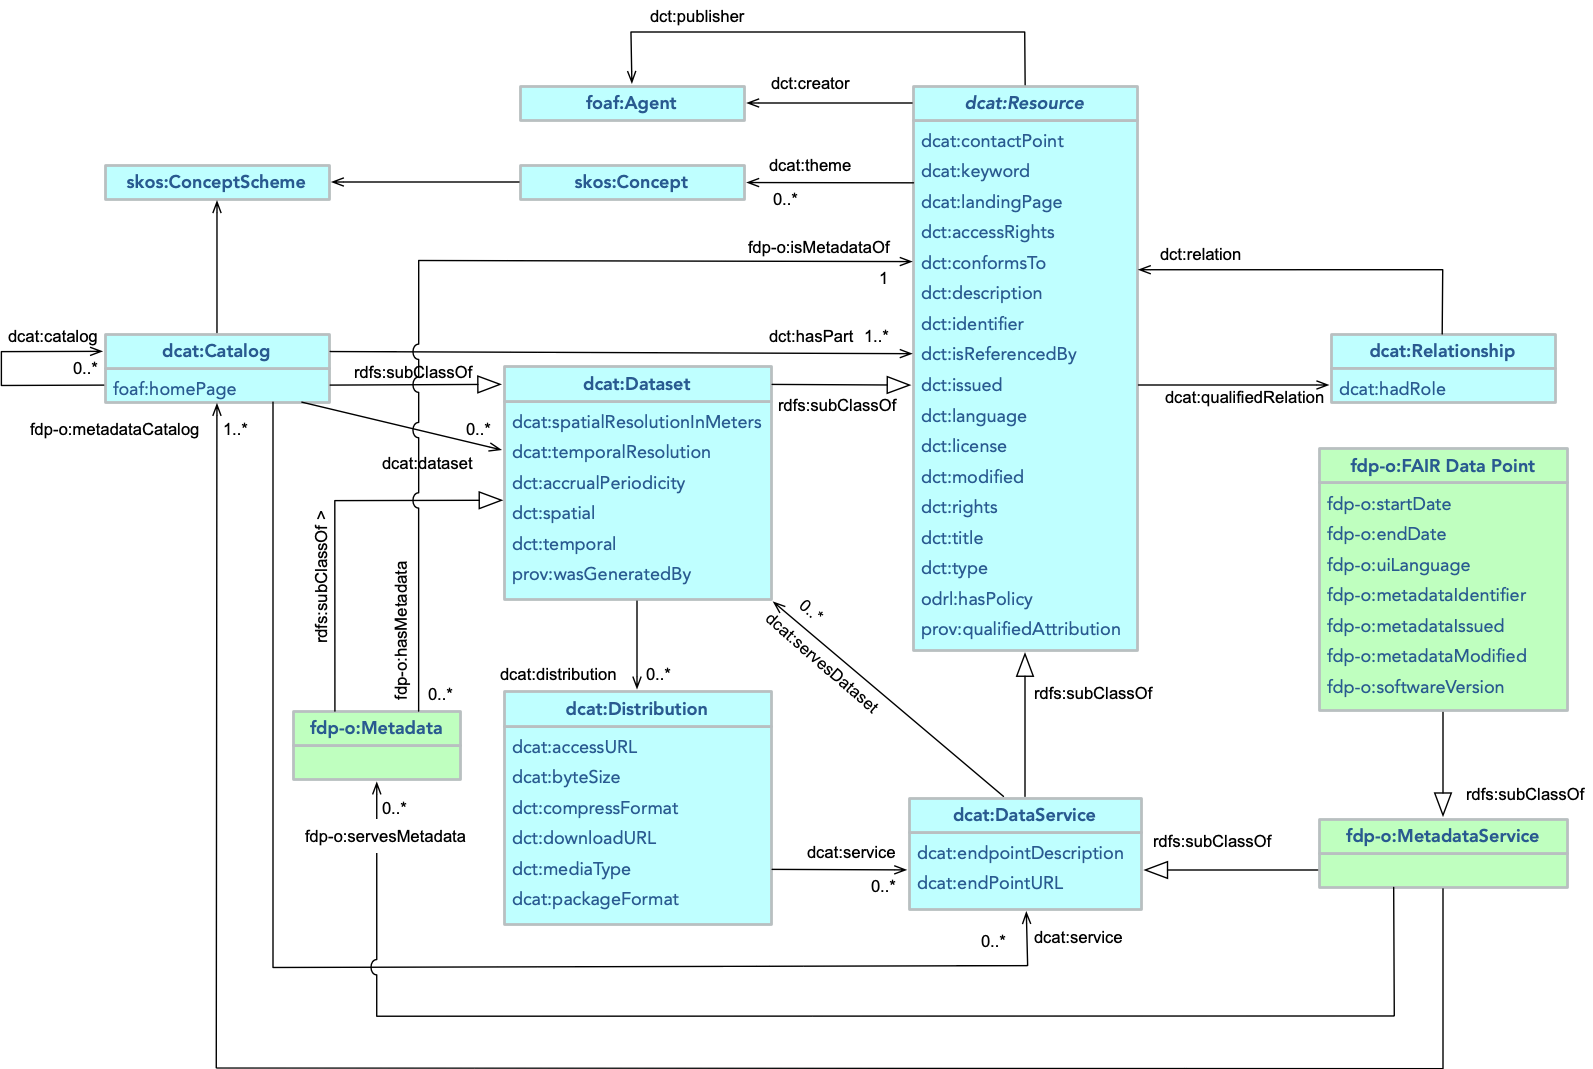 FDP metadata structure